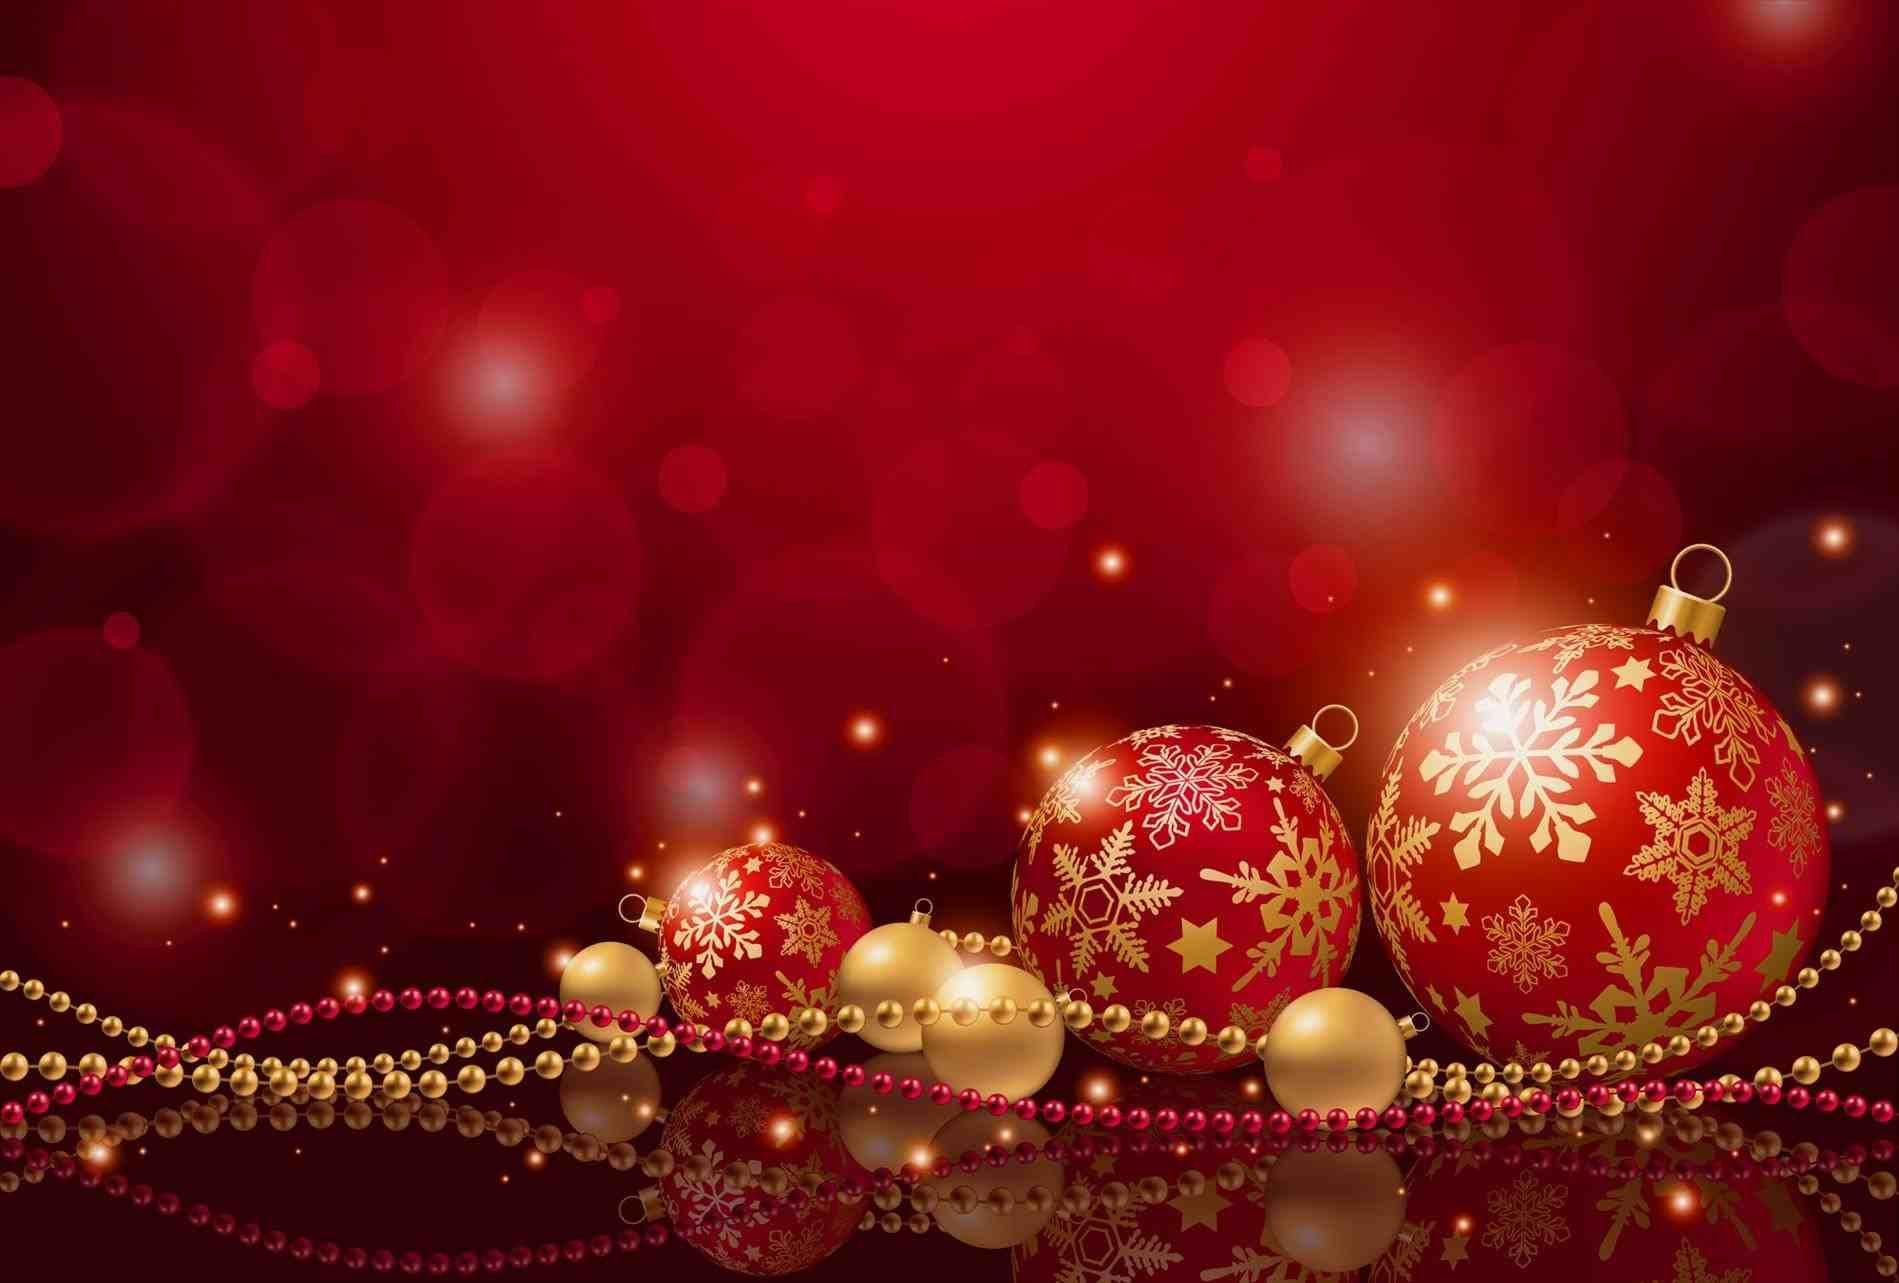 Màu đỏ và vàng là những màu sắc tuyệt vời nhất cho Giáng Sinh, với lời chúc mừng Giáng Sinh tuyệt đẹp không thể thiếu những hình nền Giáng Sinh màu đỏ và vàng. Hãy thưởng thức những hình nền này để cảm nhận toàn bộ sự đặc biệt của mùa Giáng Sinh.